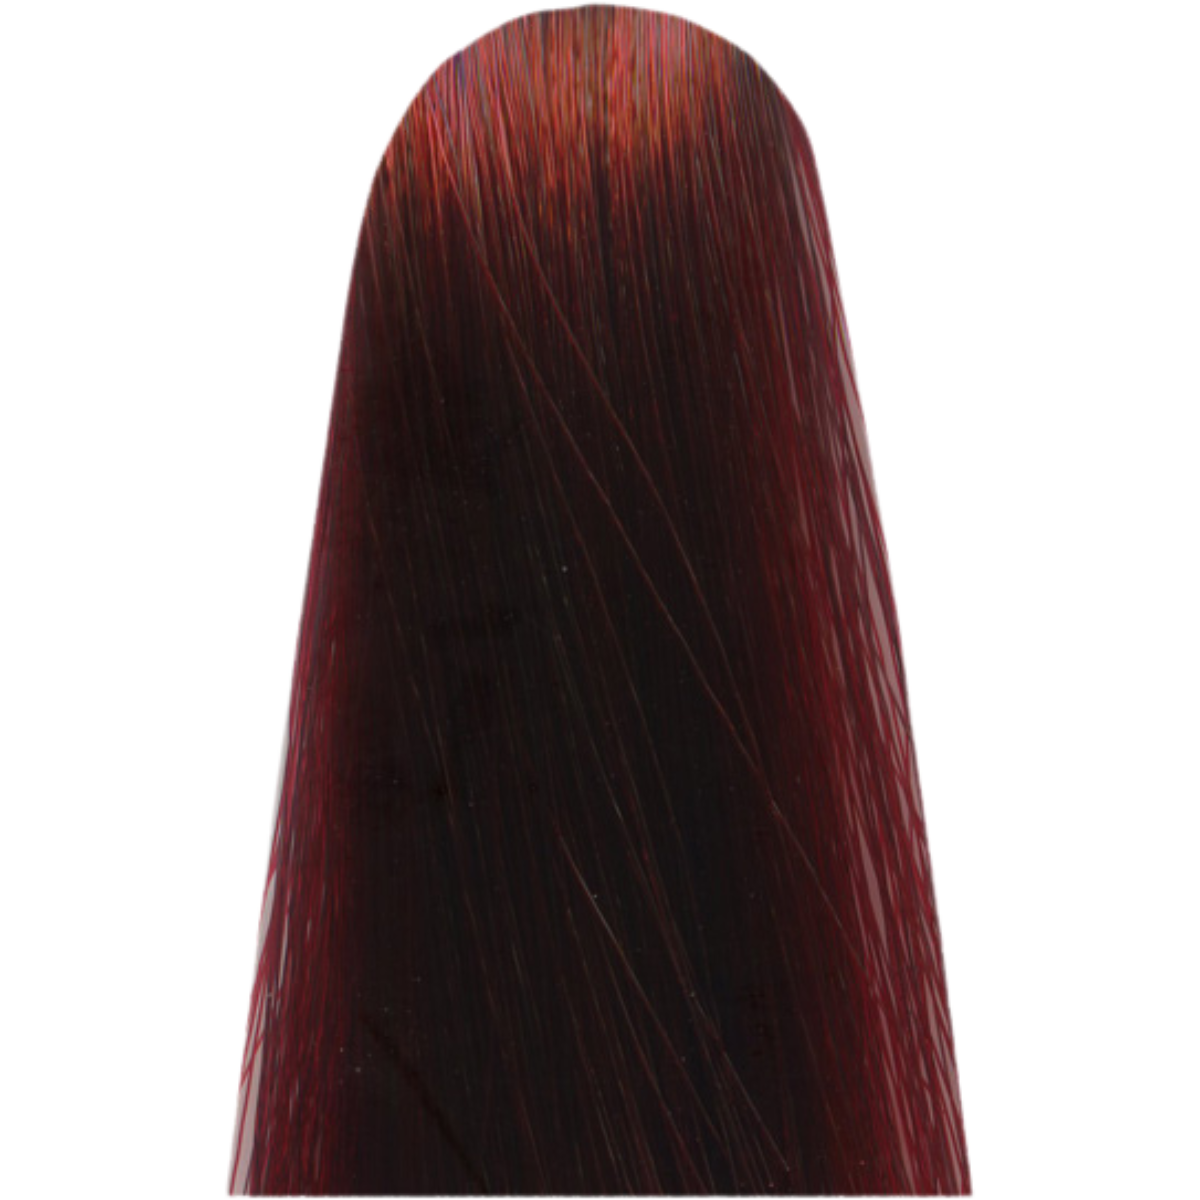 צבע שיער C6,66 אדום RED מג`ירל MAJIREL לוריאל צבע לשיער 50 גרם